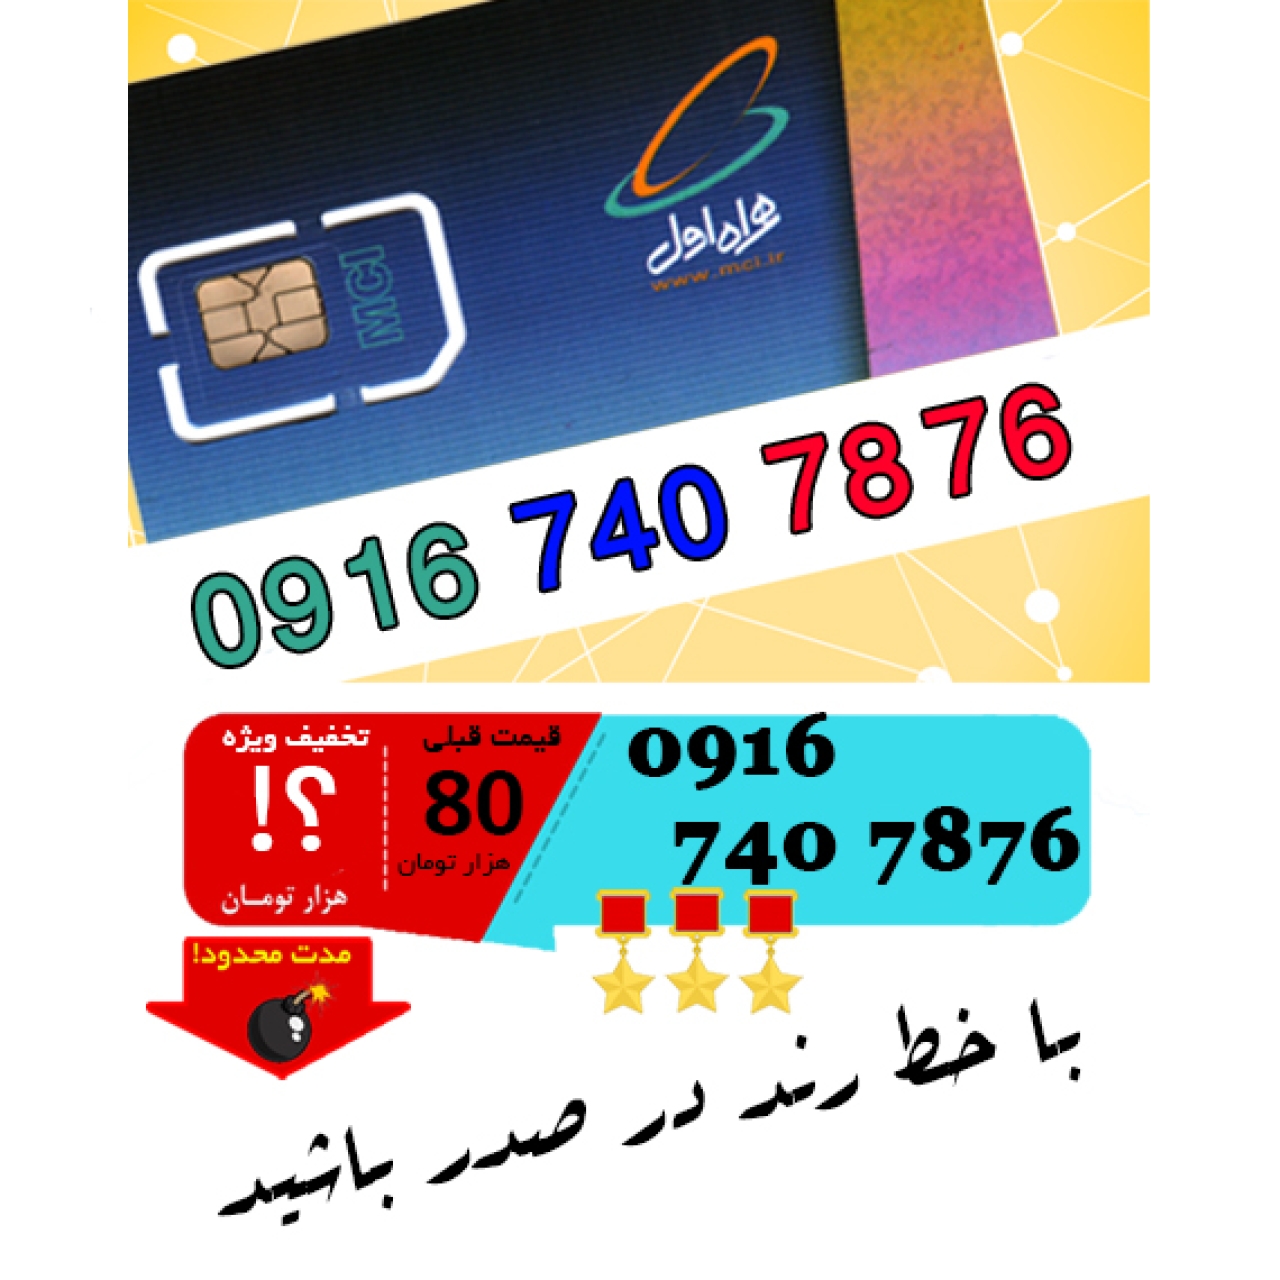 سیم کارت اعتباری رند همراه اول 09167407876